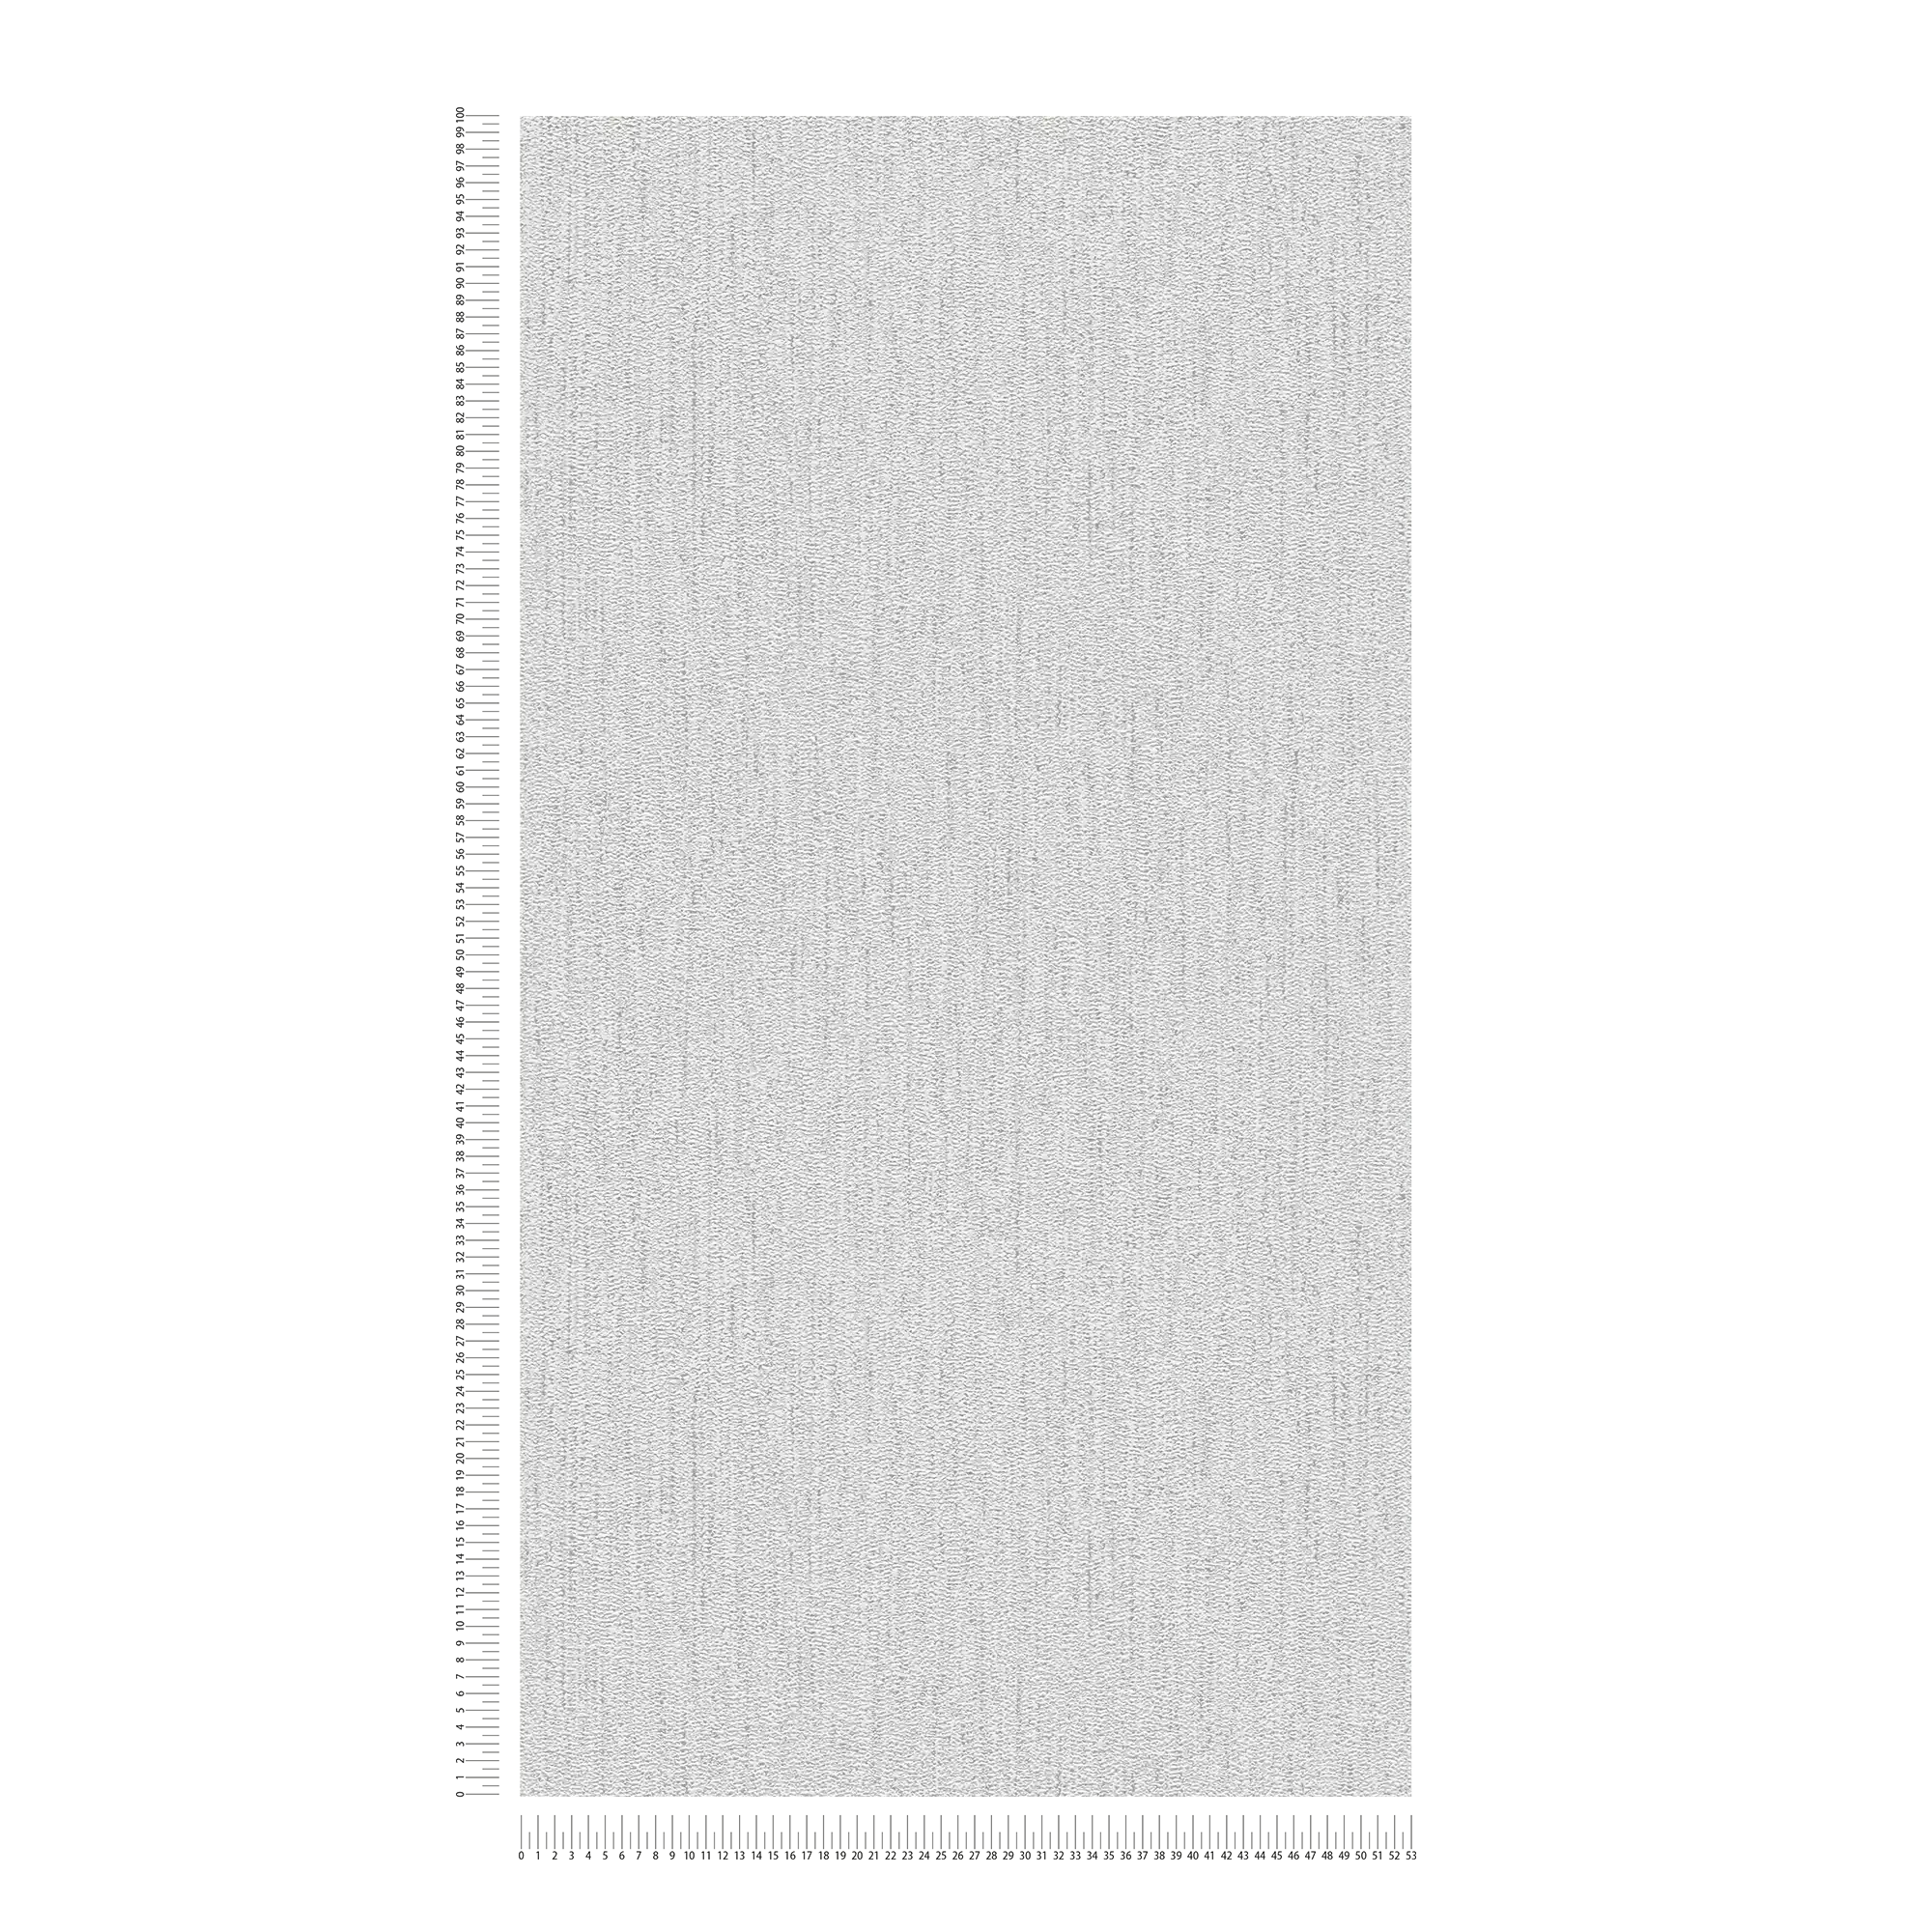             Papier peint structuré avec motif tissé - gris clair, argenté
        